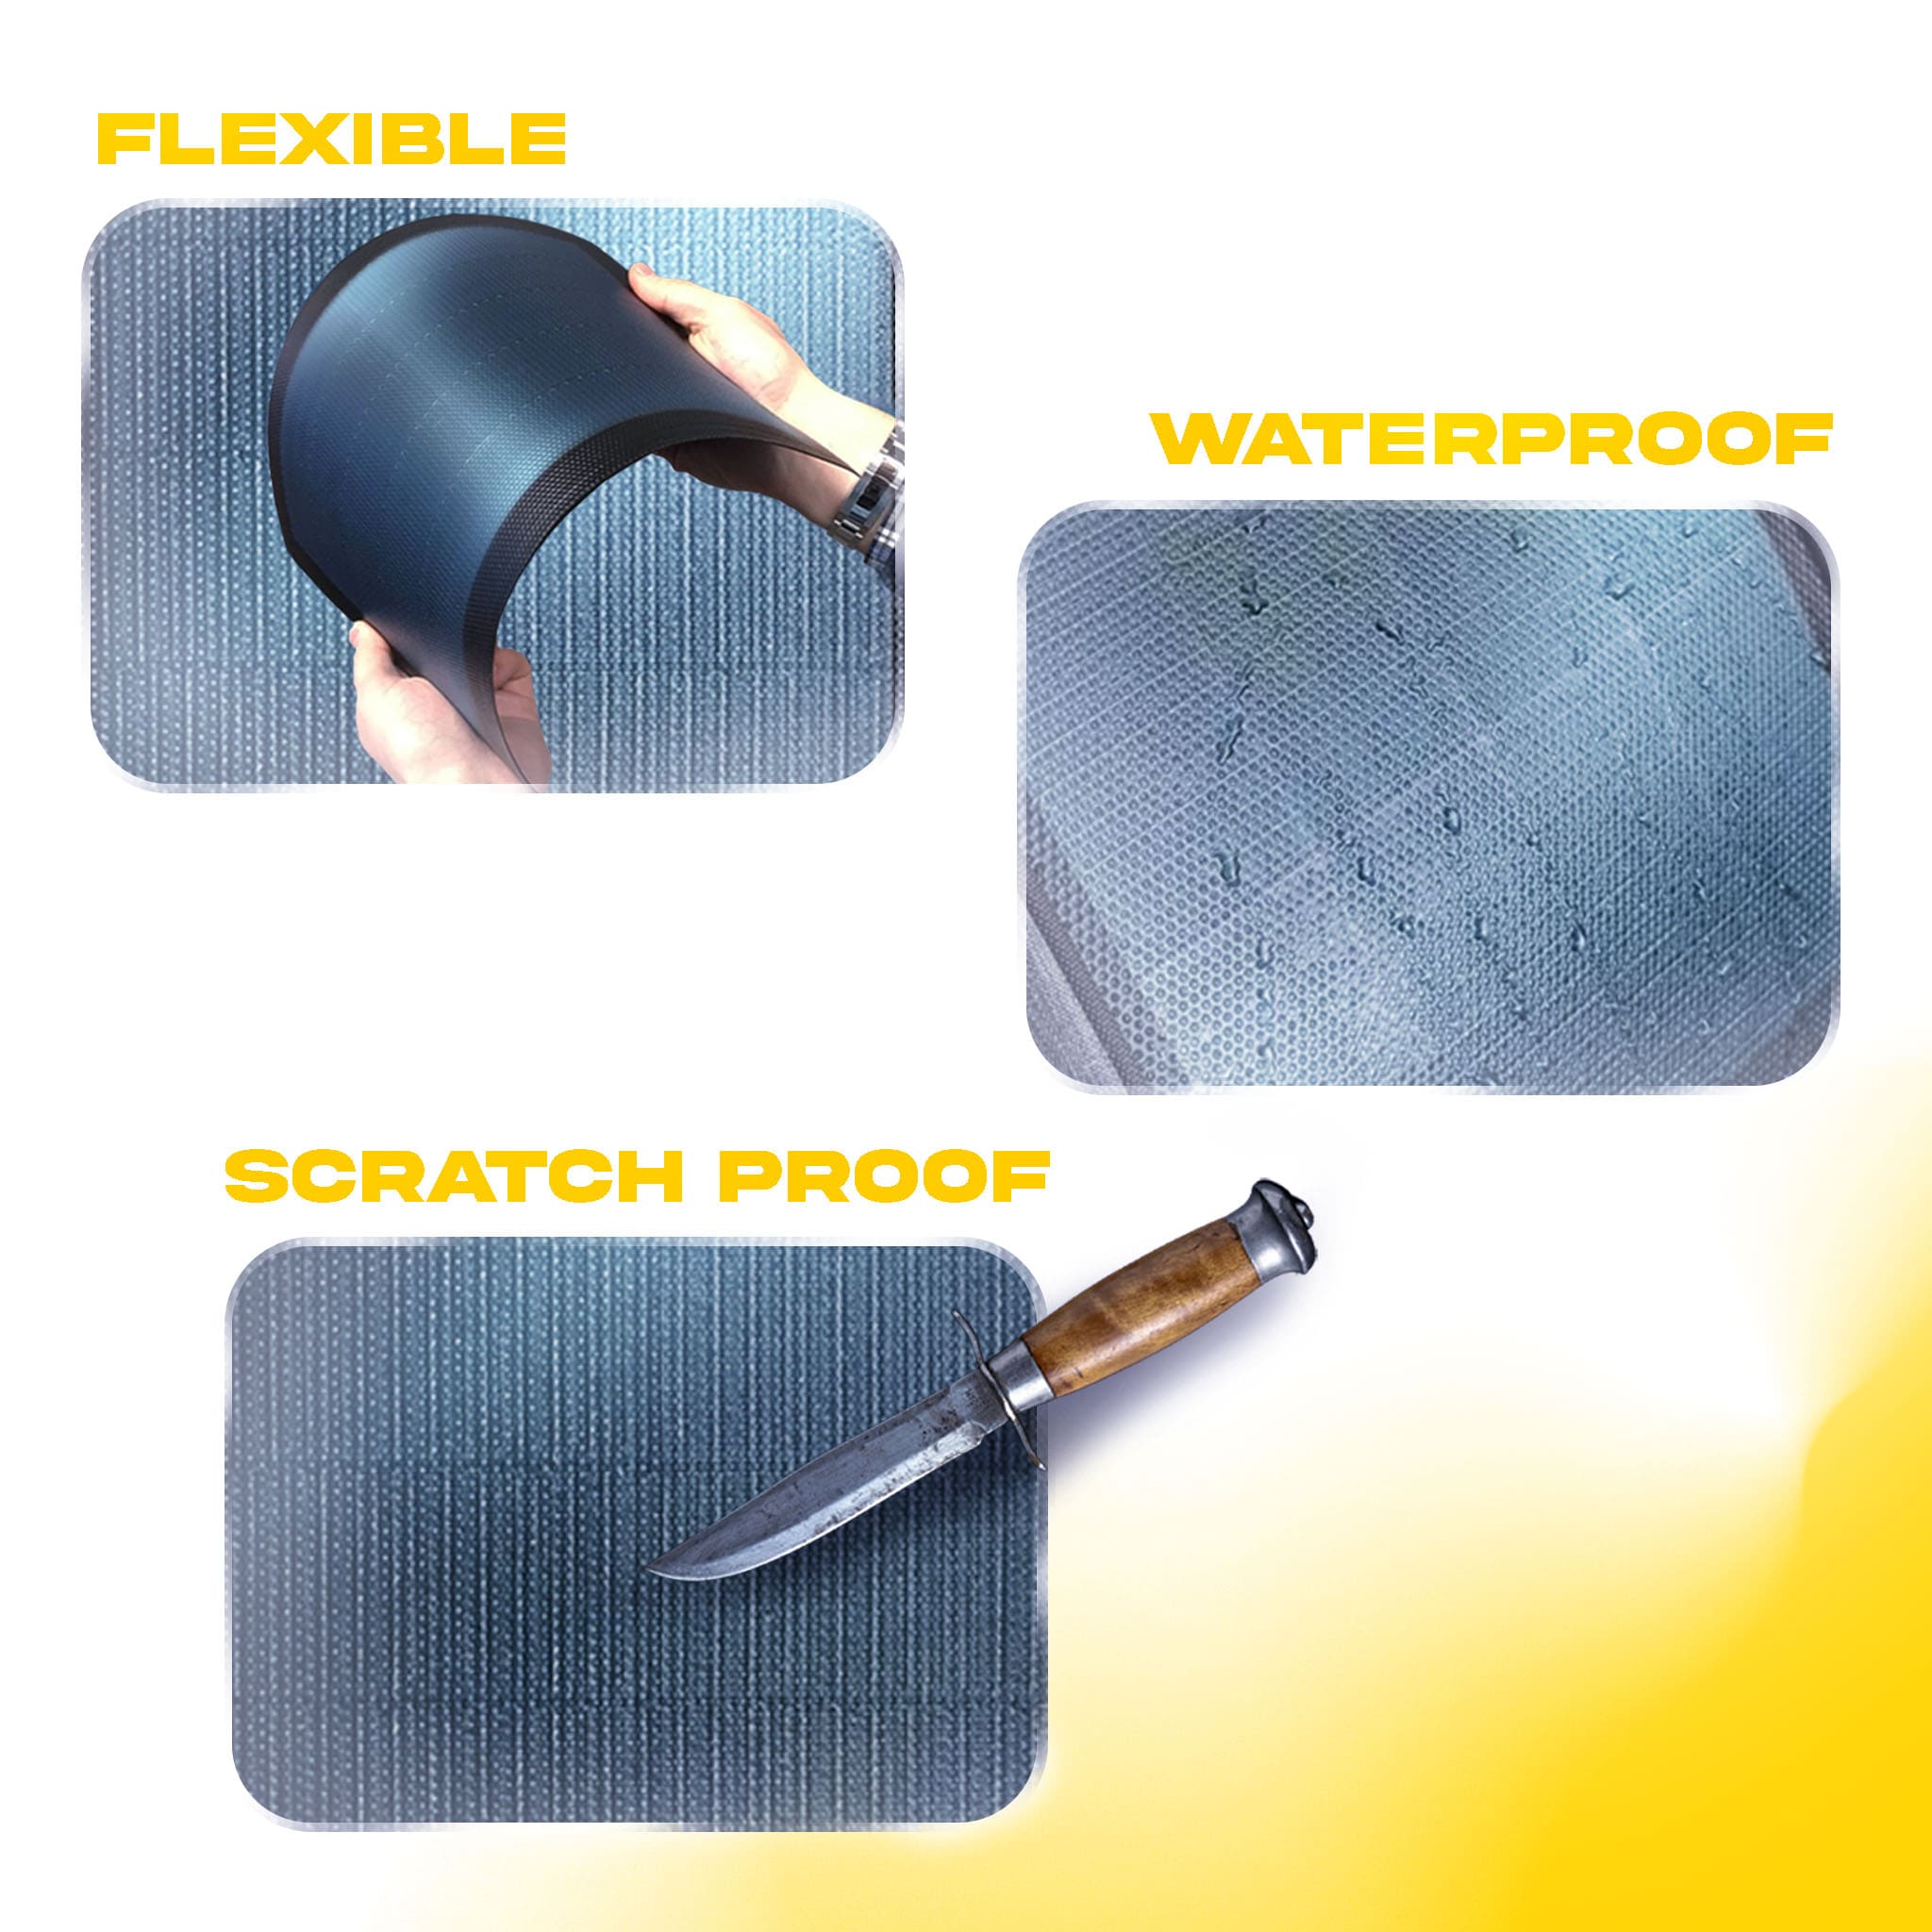 Panneau solaire fusion 6, Flexible, Waterproof, scratchpoof sur fond jaune et blanc .